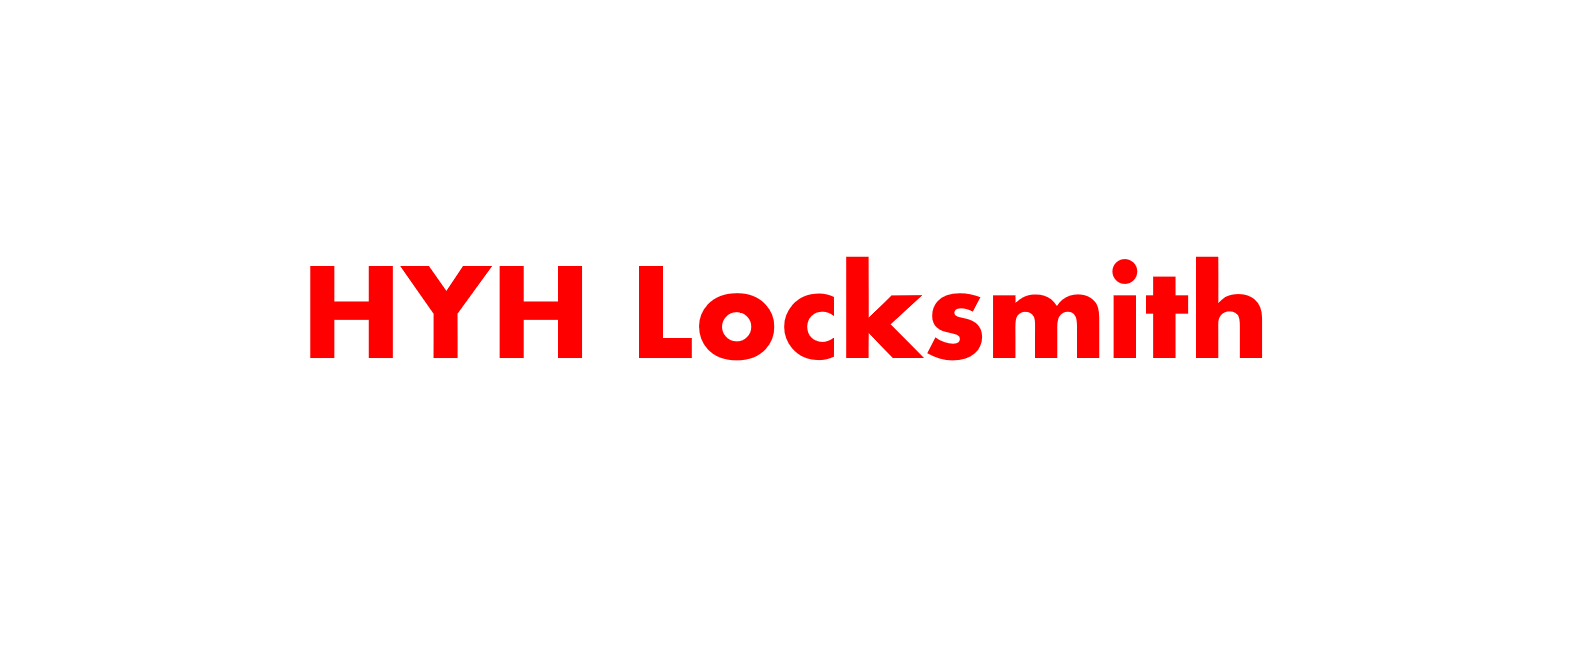 HYH LOCKSMITH